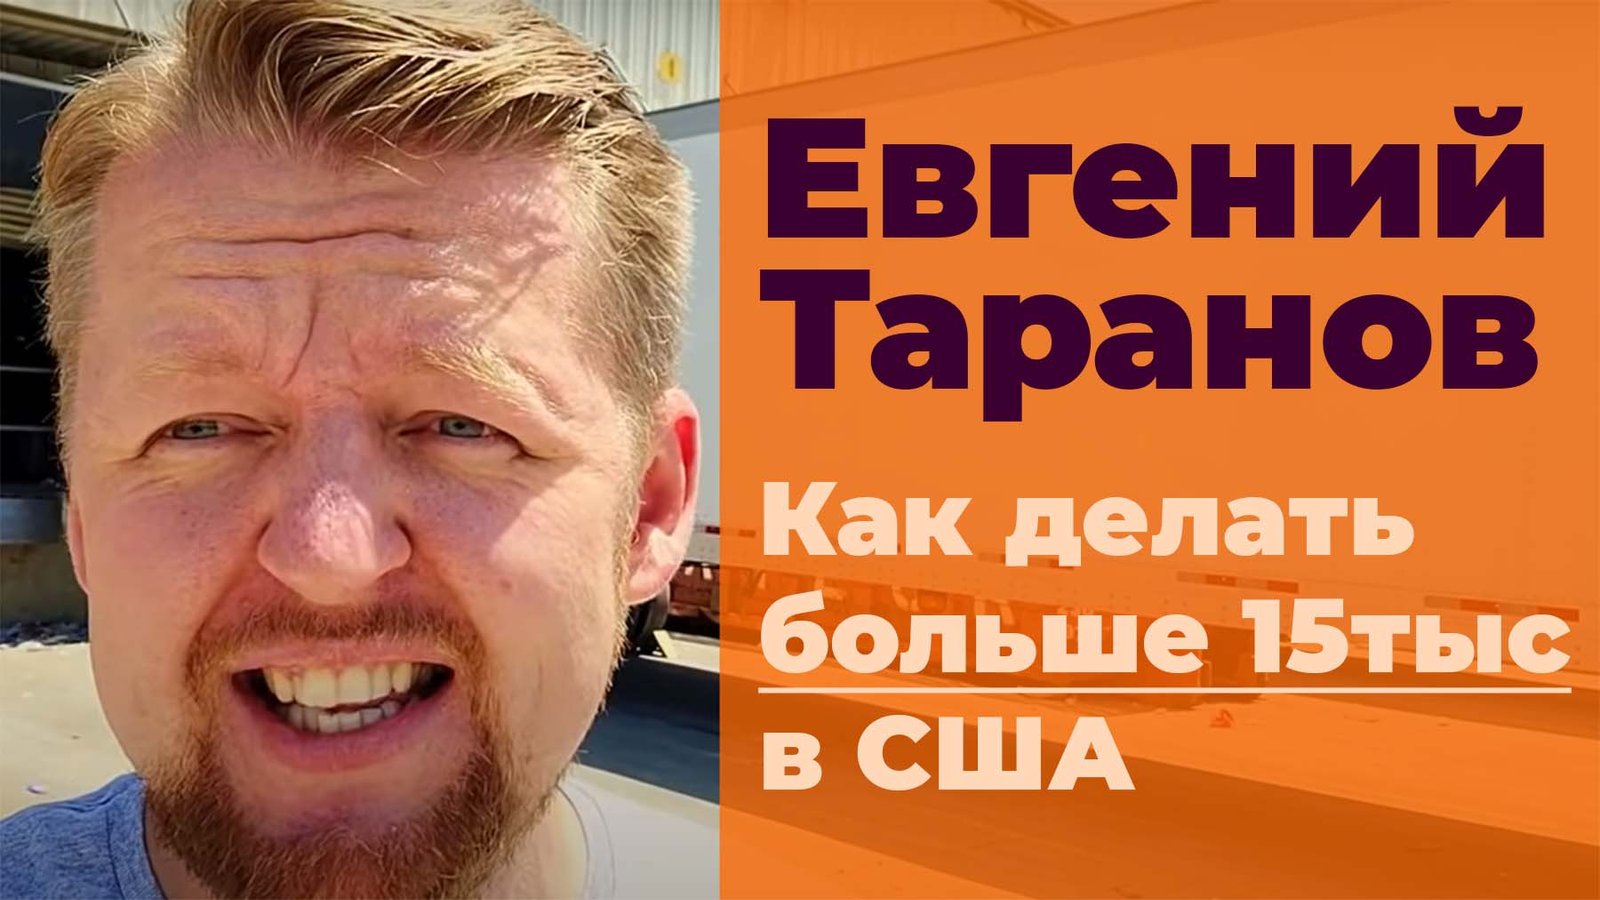 Евгений Таранов дальнобойщик из США и Ютуб блогер